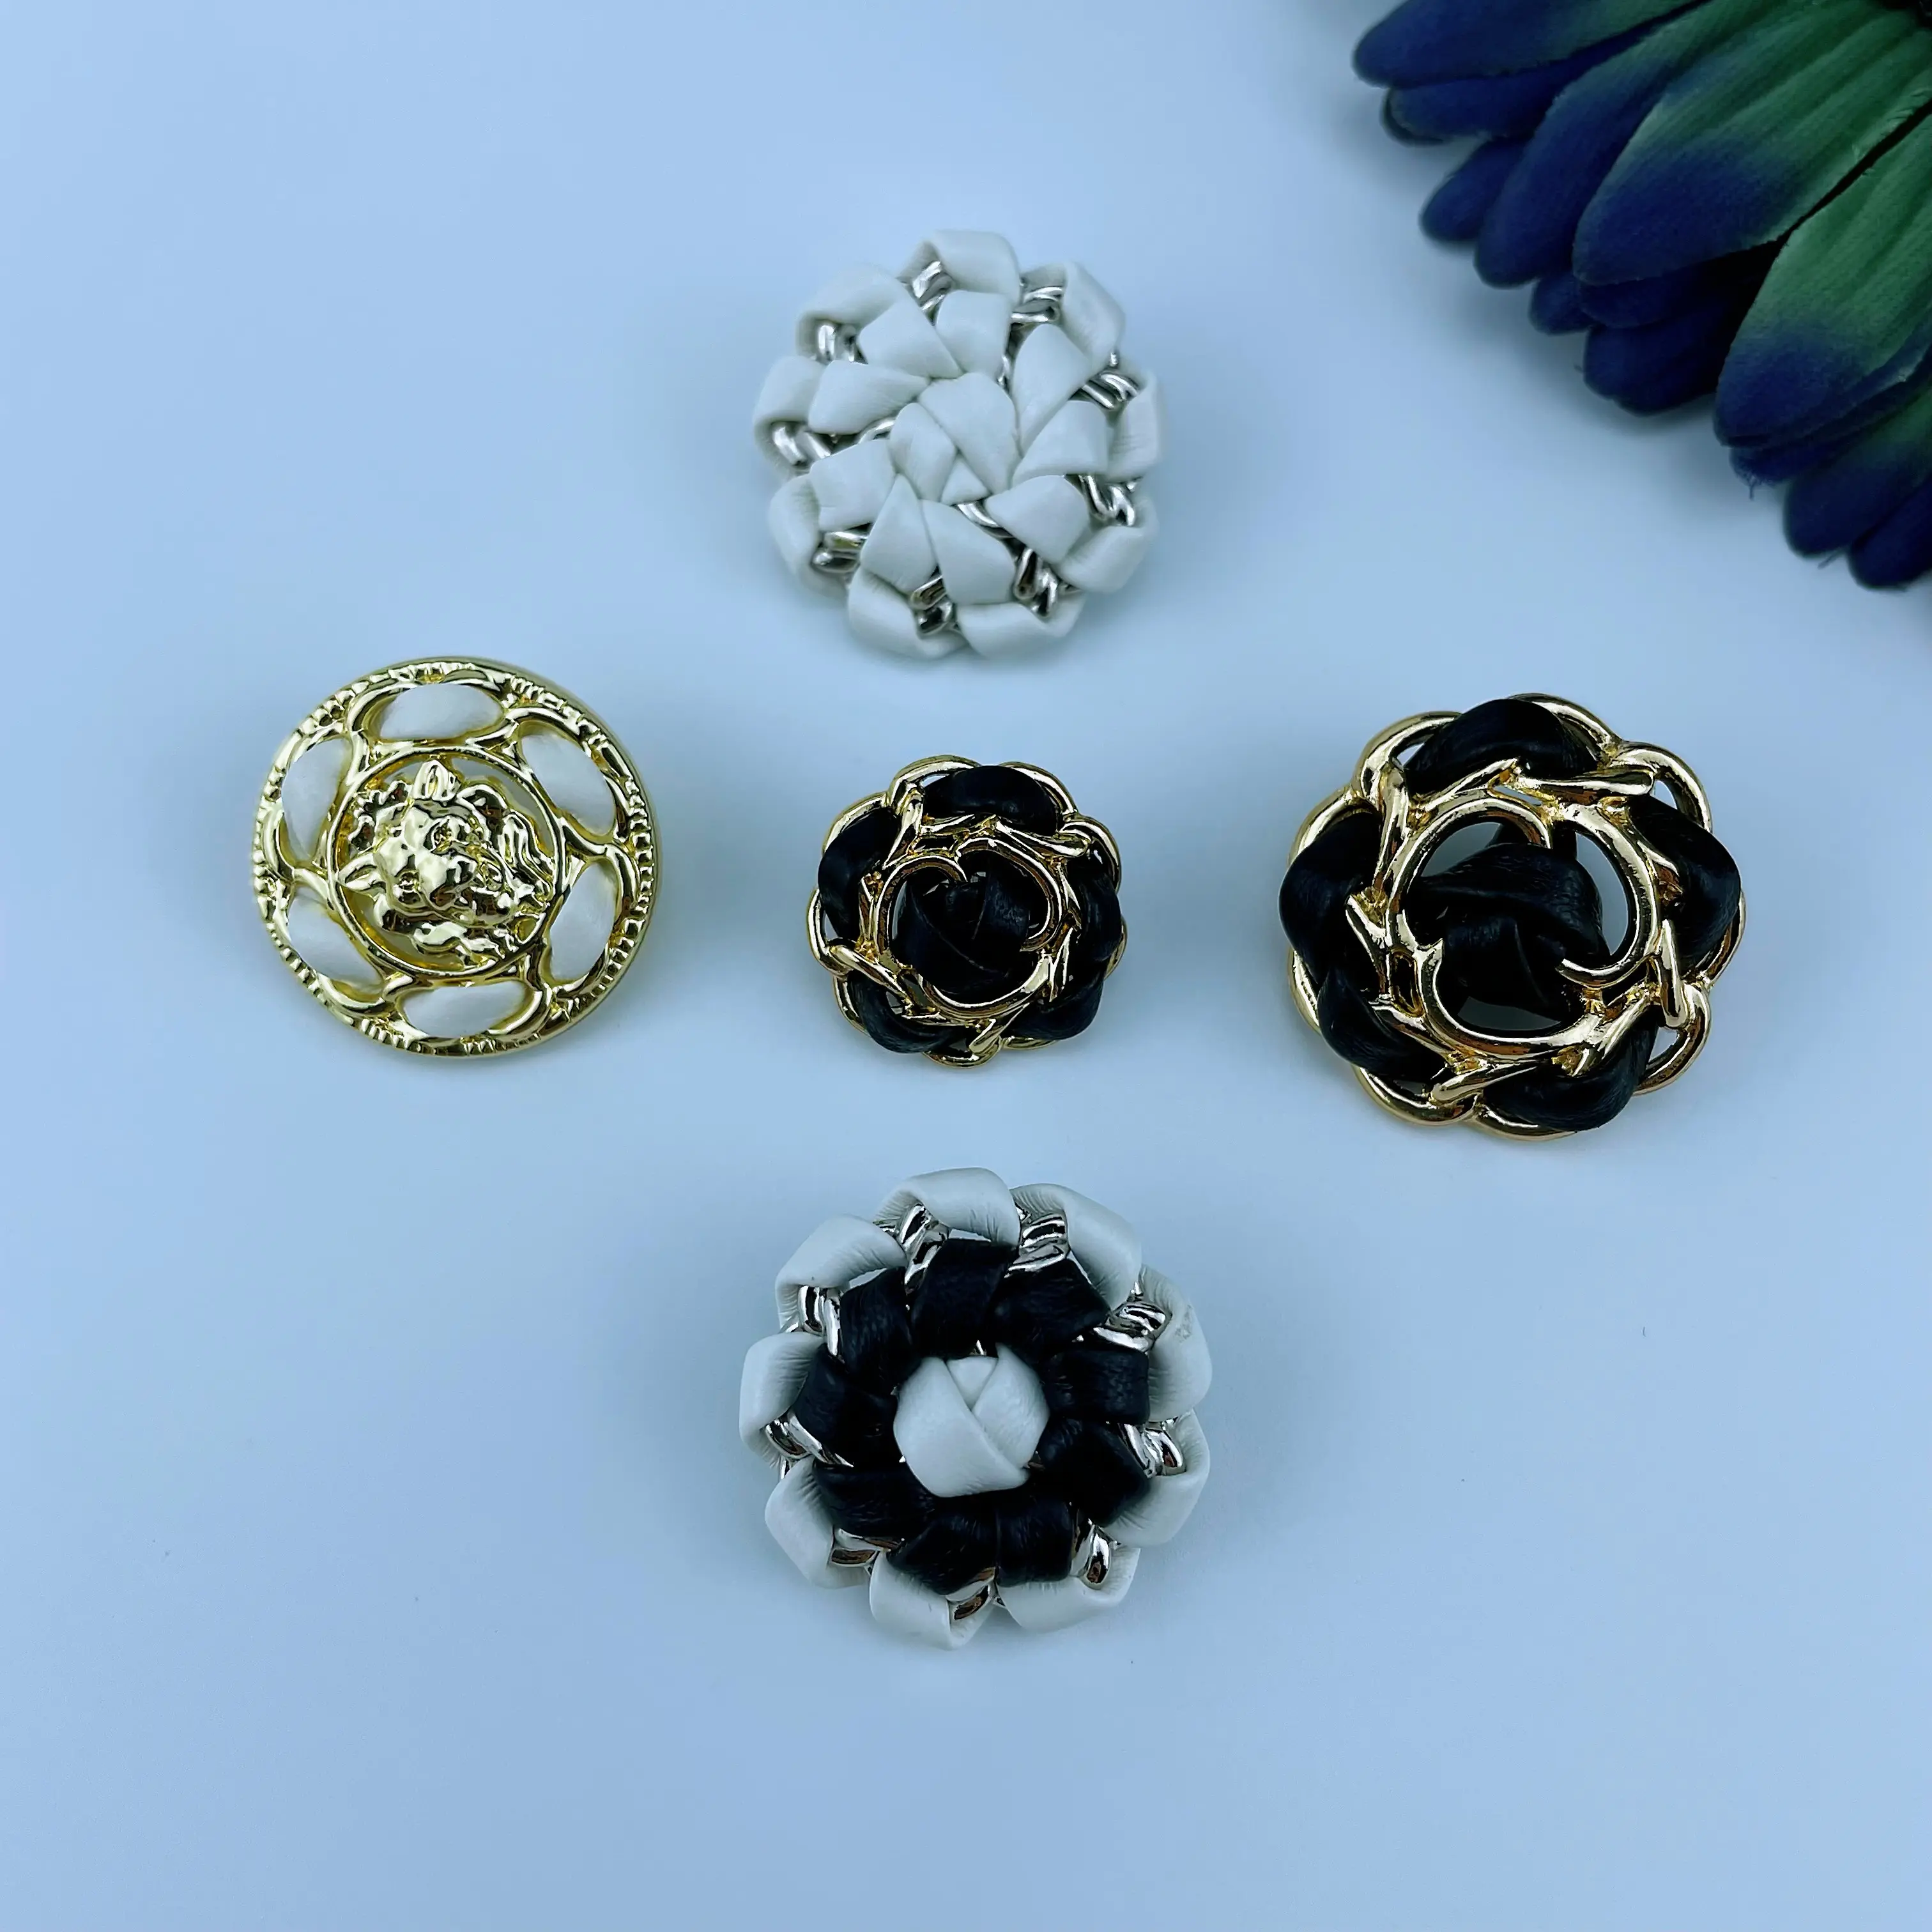 Pirinç dikiş fantezi gömlek takım düğmeleri ceket taşlar giysiler aksesuarları Metal alaşım PU deri ile özelleştirilmiş çiçek düğmesi